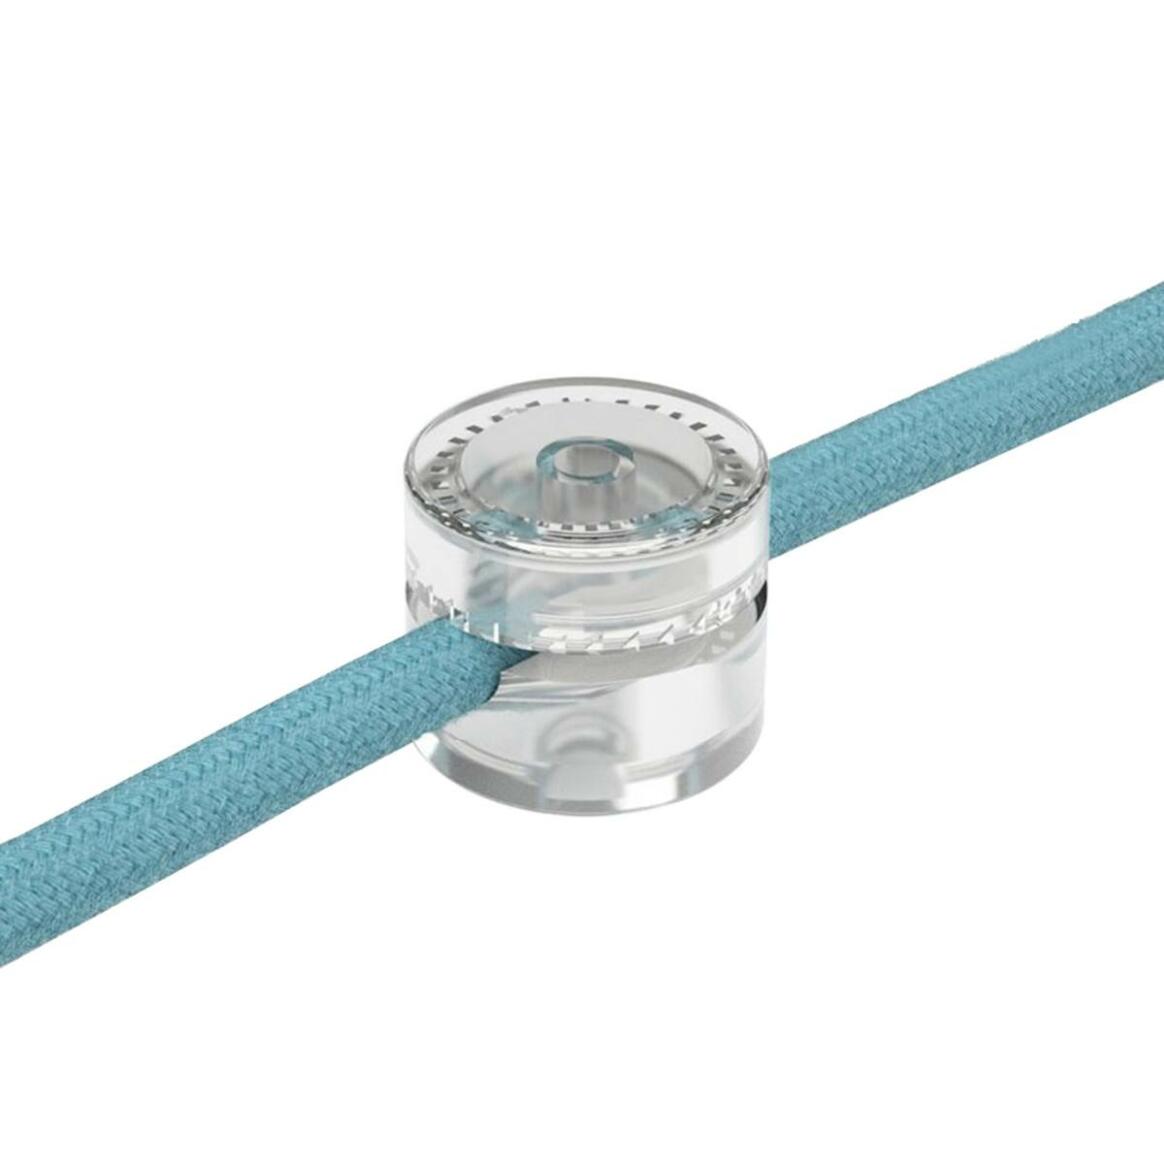 Crochet universel transparent pour câble en corde main product image